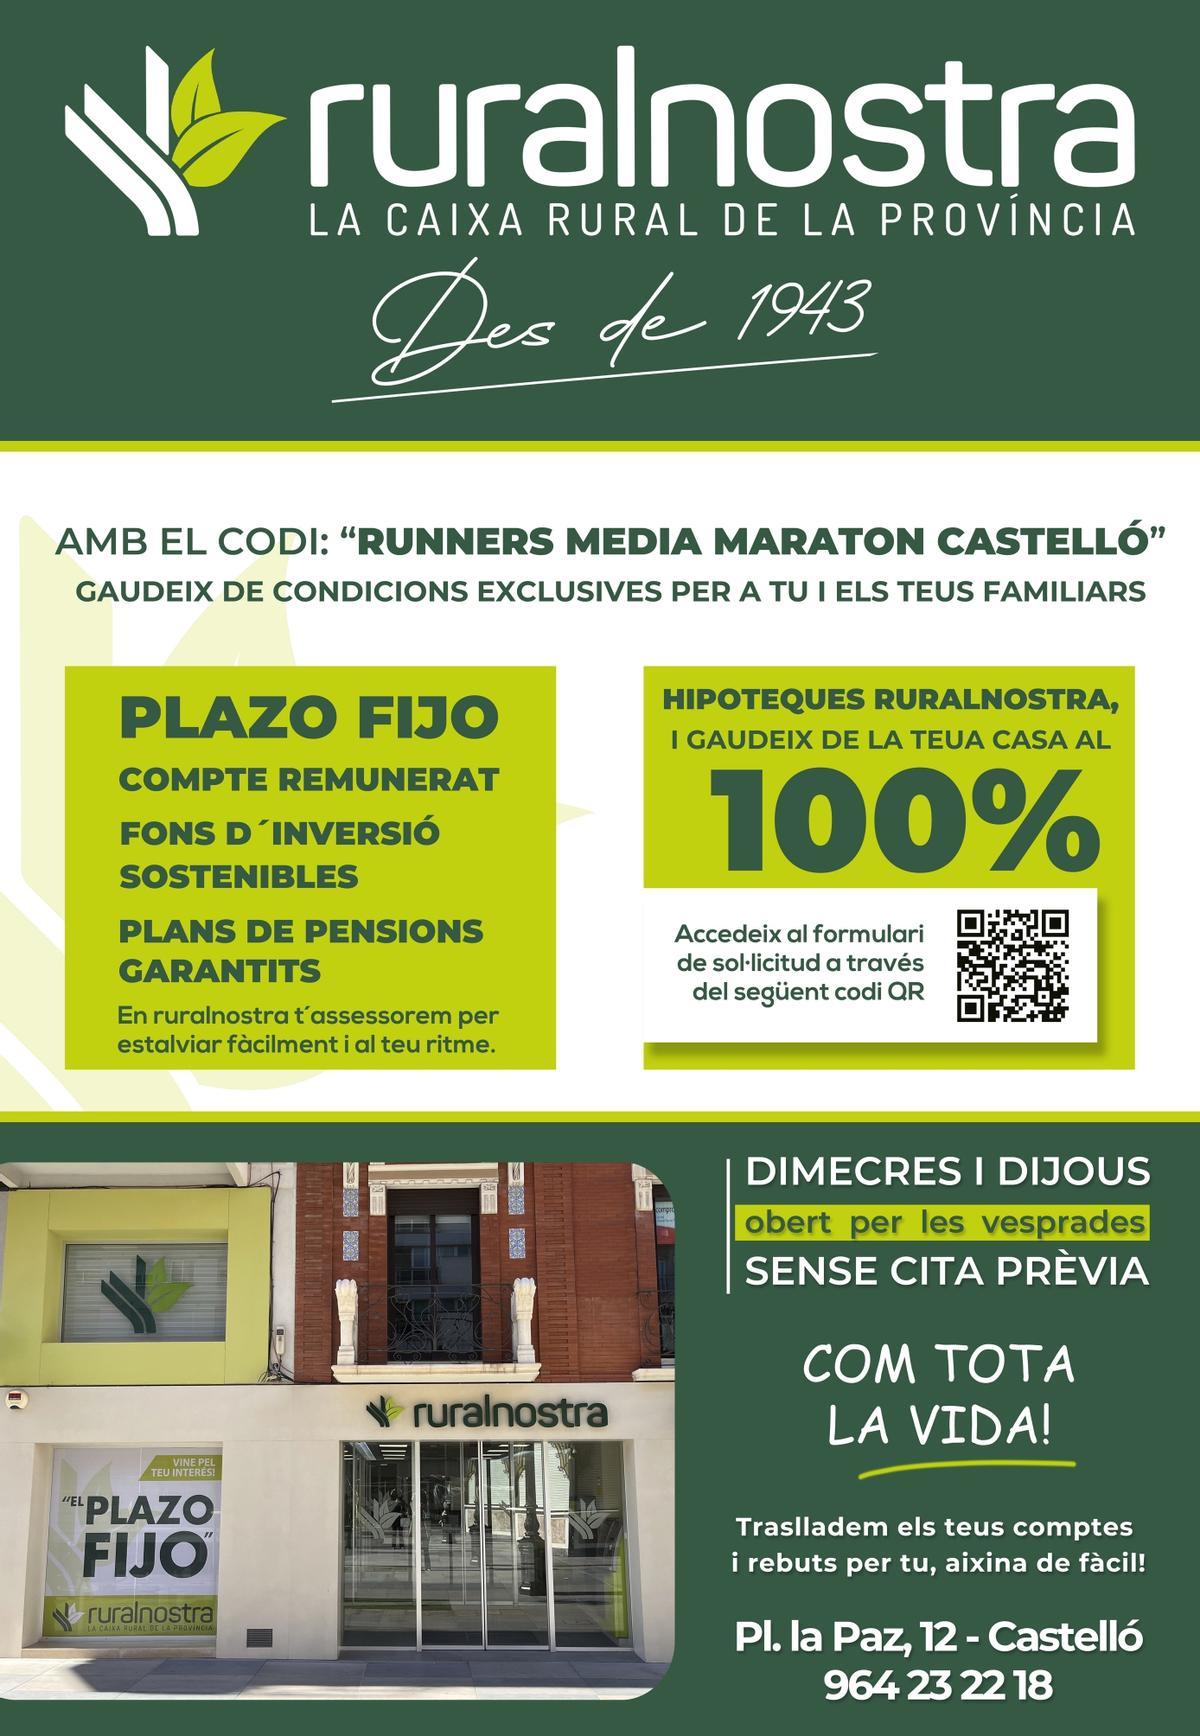 Ruralnostra se une a la 39ª edición de la Media Maratón de Castelló como espónsor oficial